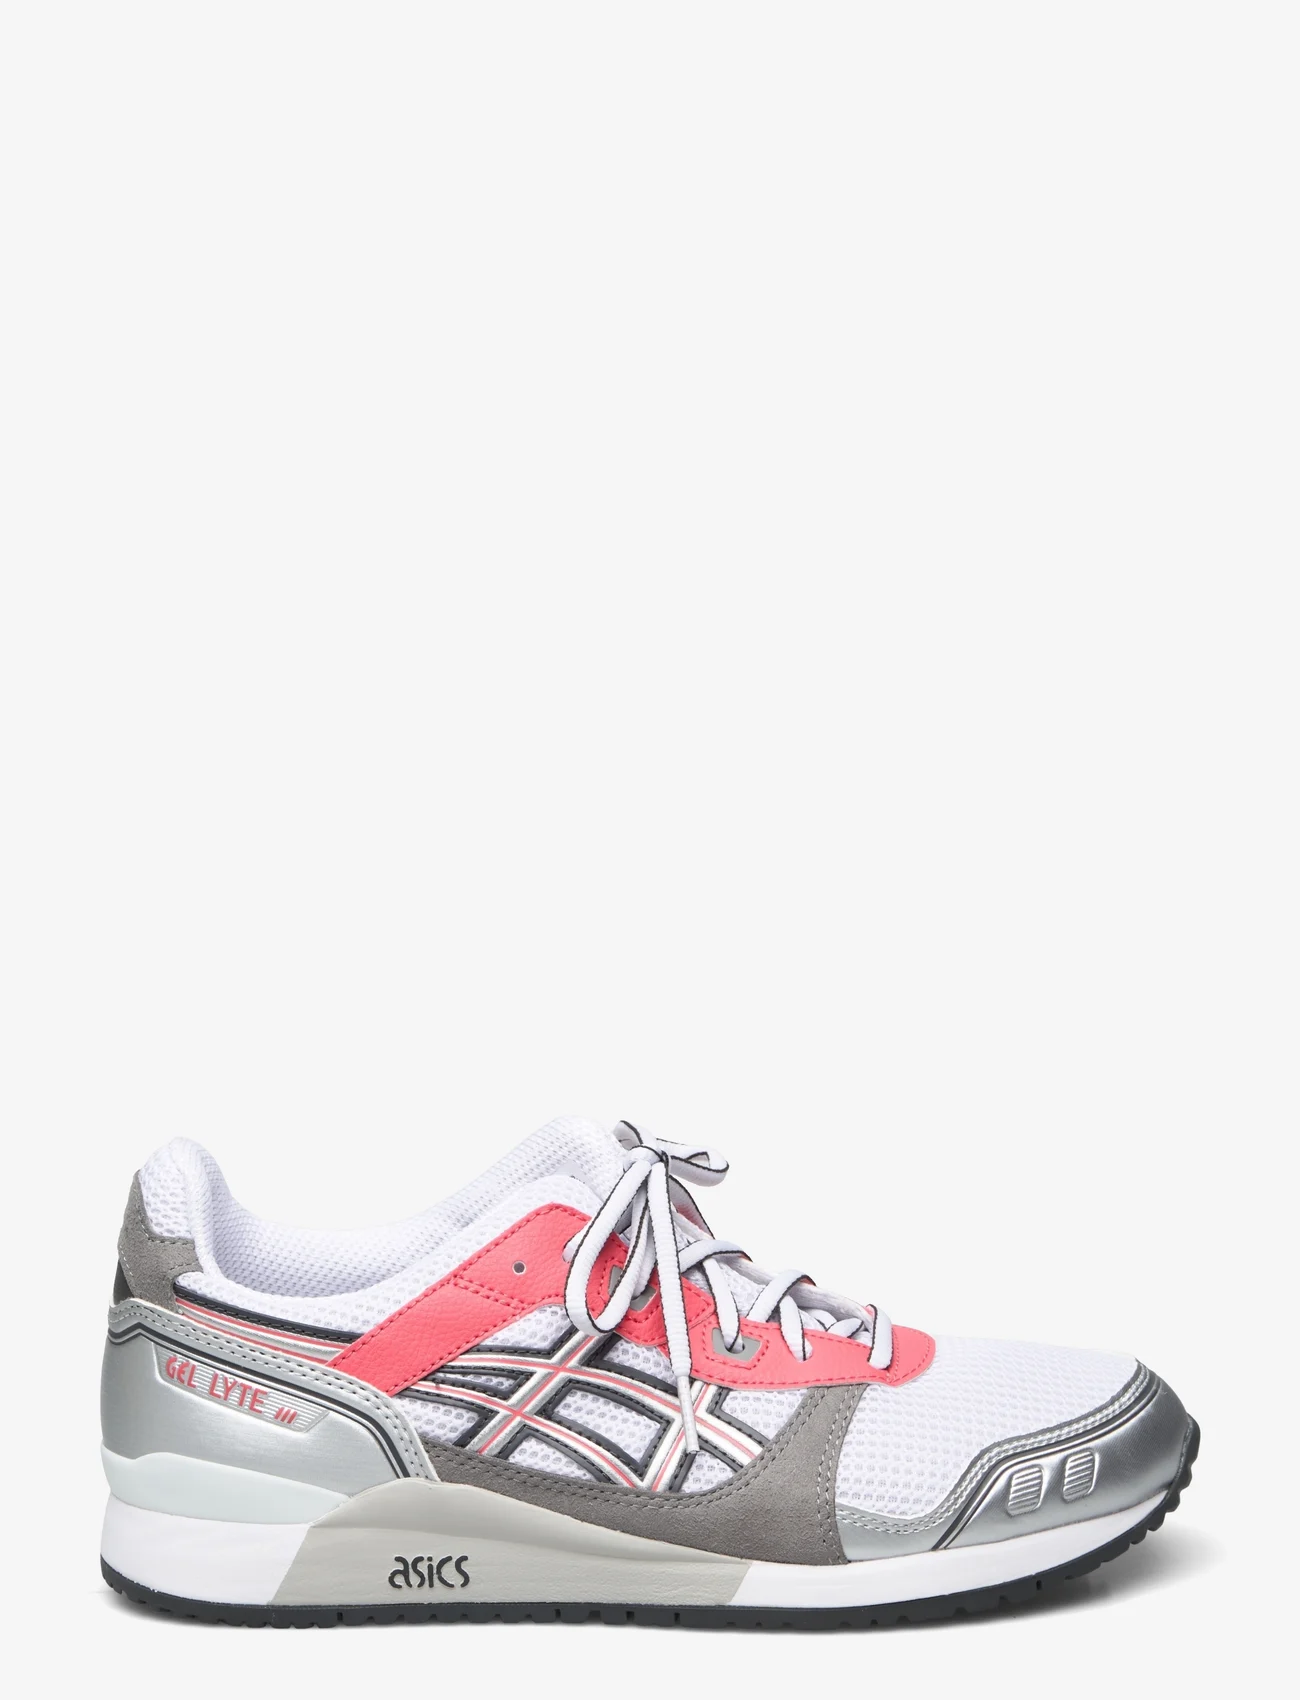 Asics - GEL-LYTE III OG - low top sneakers - white/sienna - 1